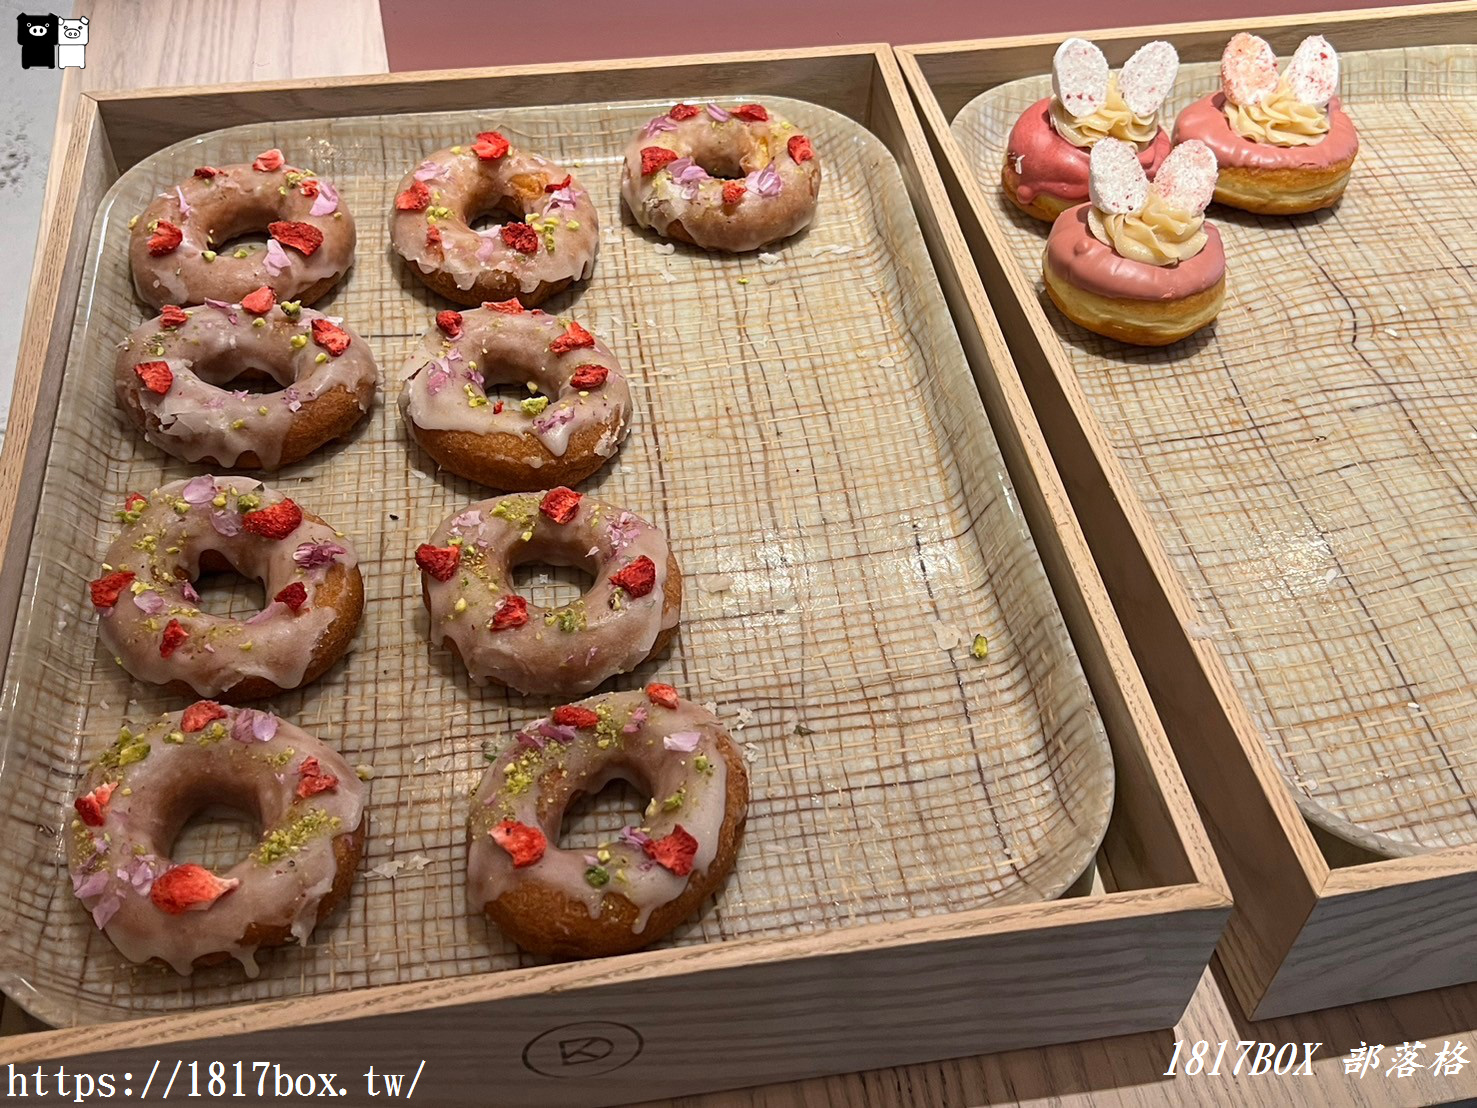 【京都美食】koé donuts 京都。koe甜甜圈京都店。IG及日本各大社群拍照打卡人氣店